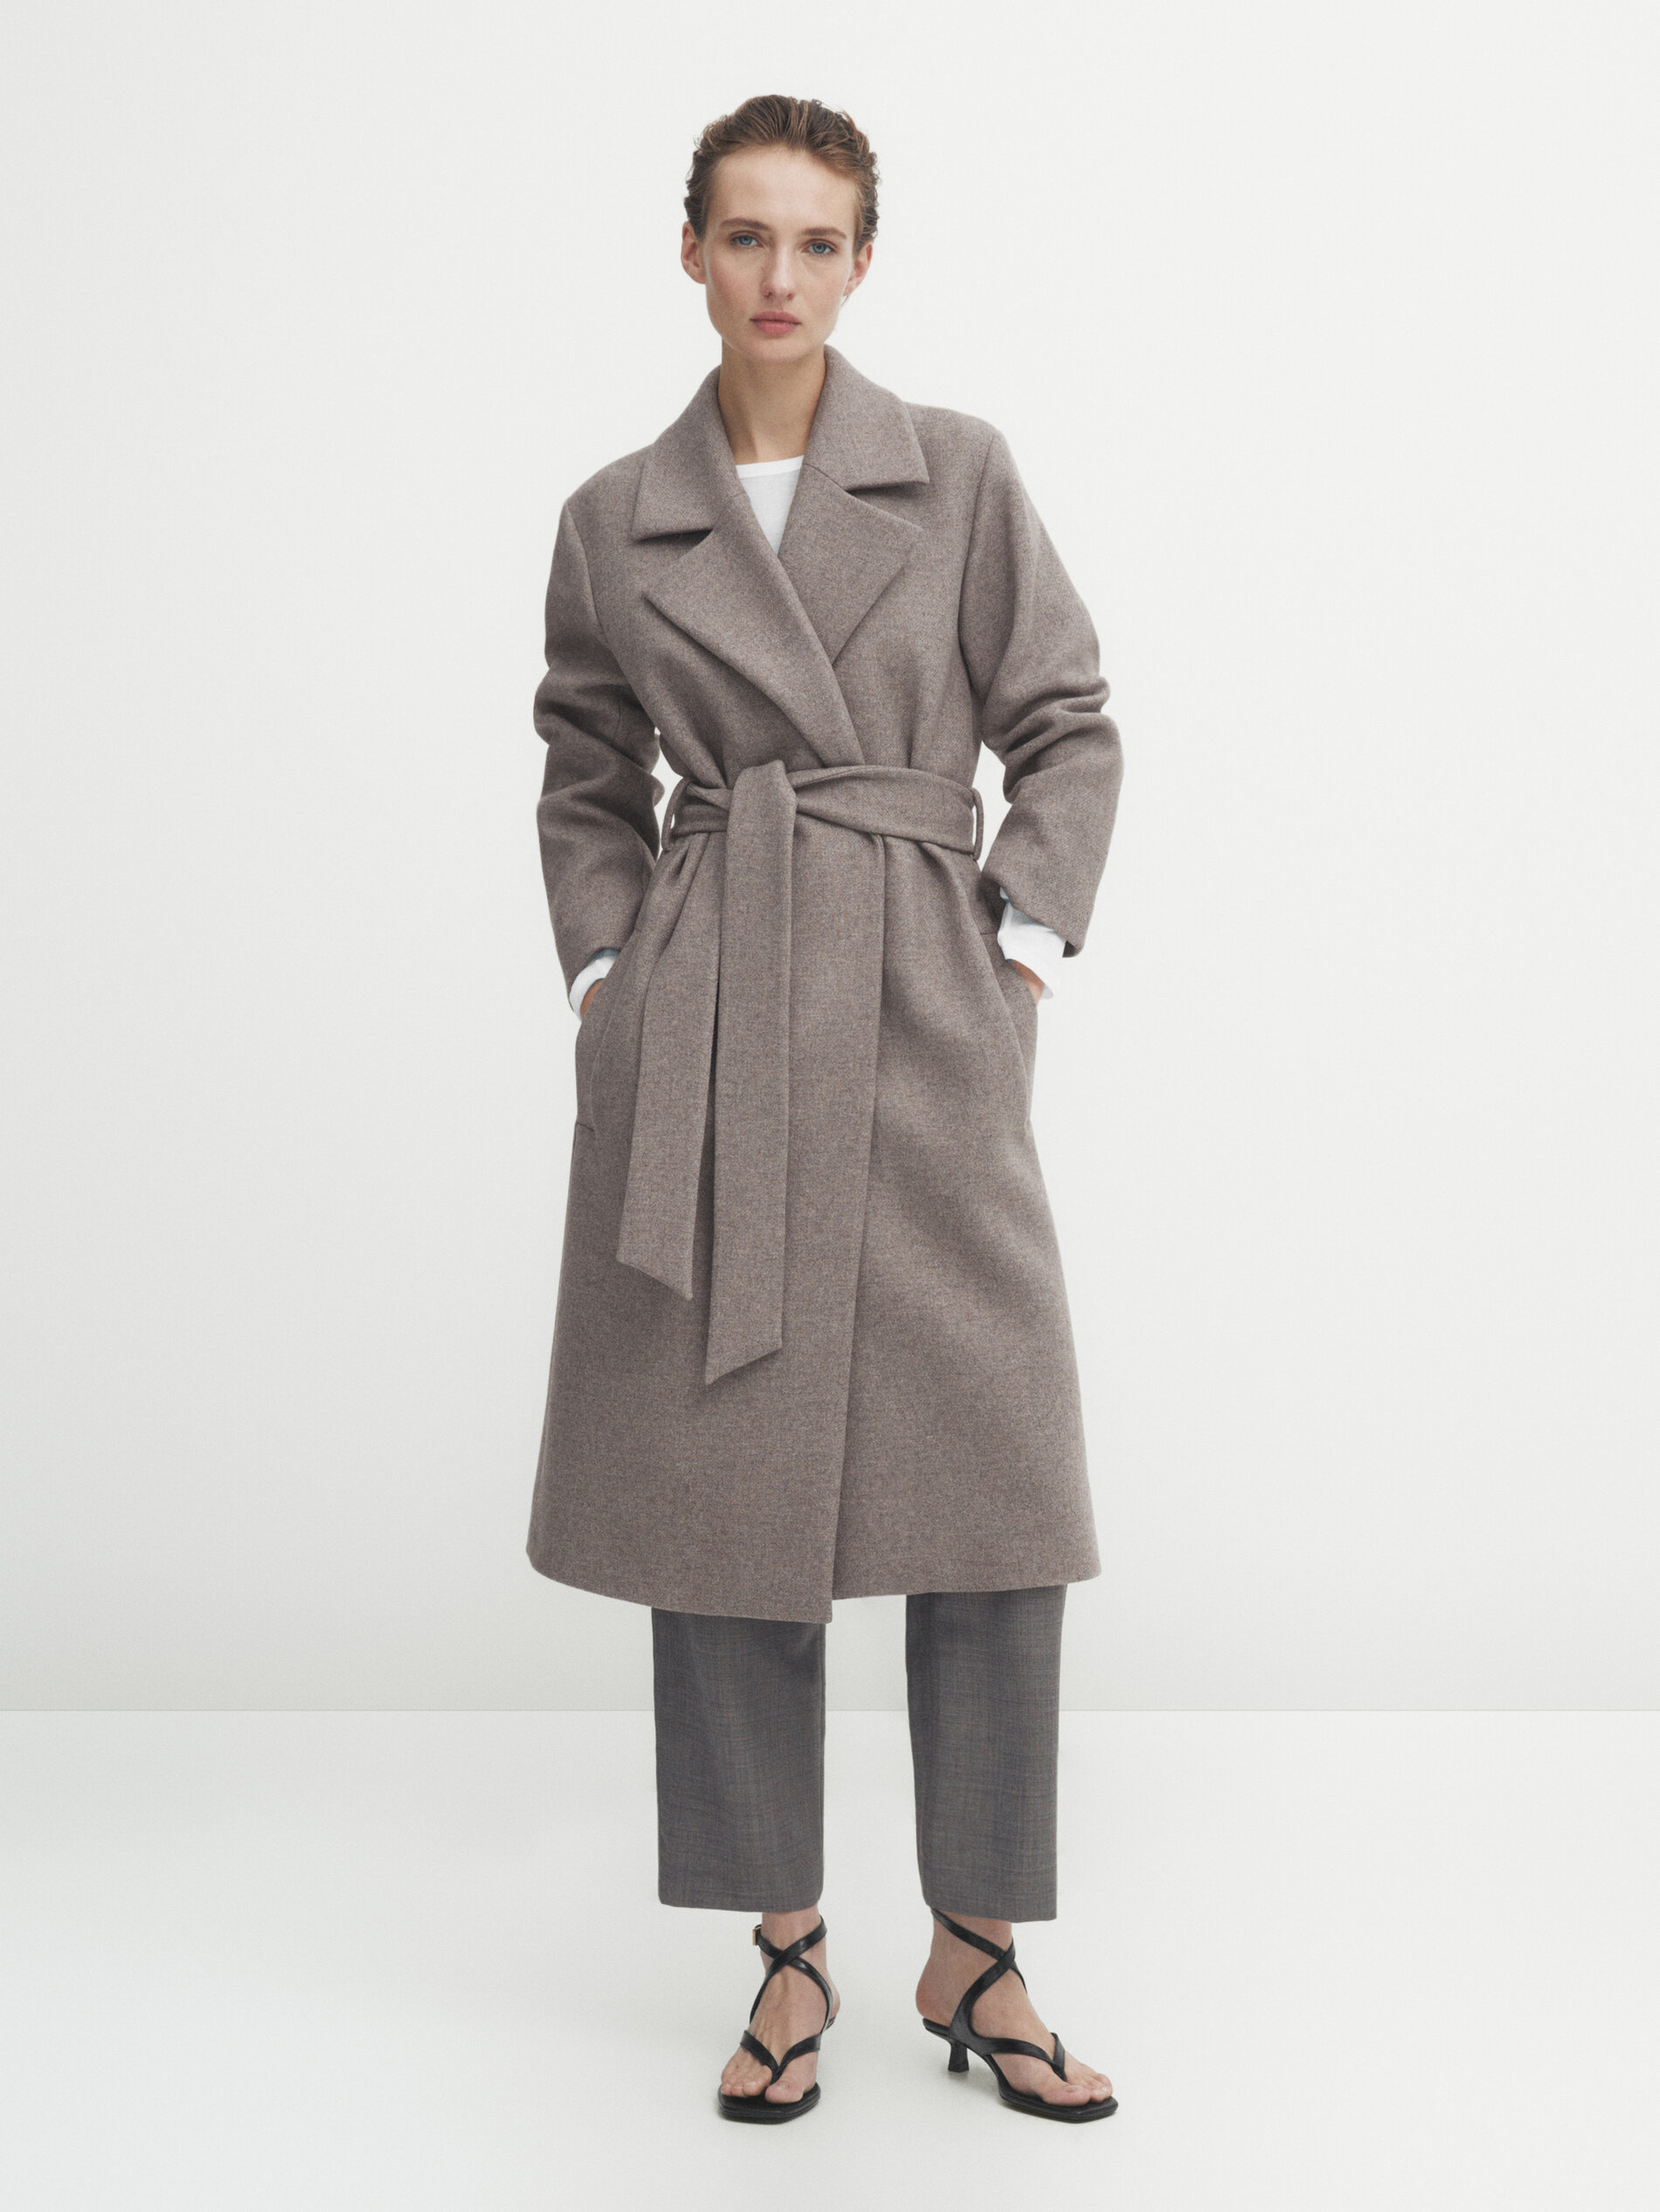 Black Friday de Massimo Dutti: abrigo estilo batín.